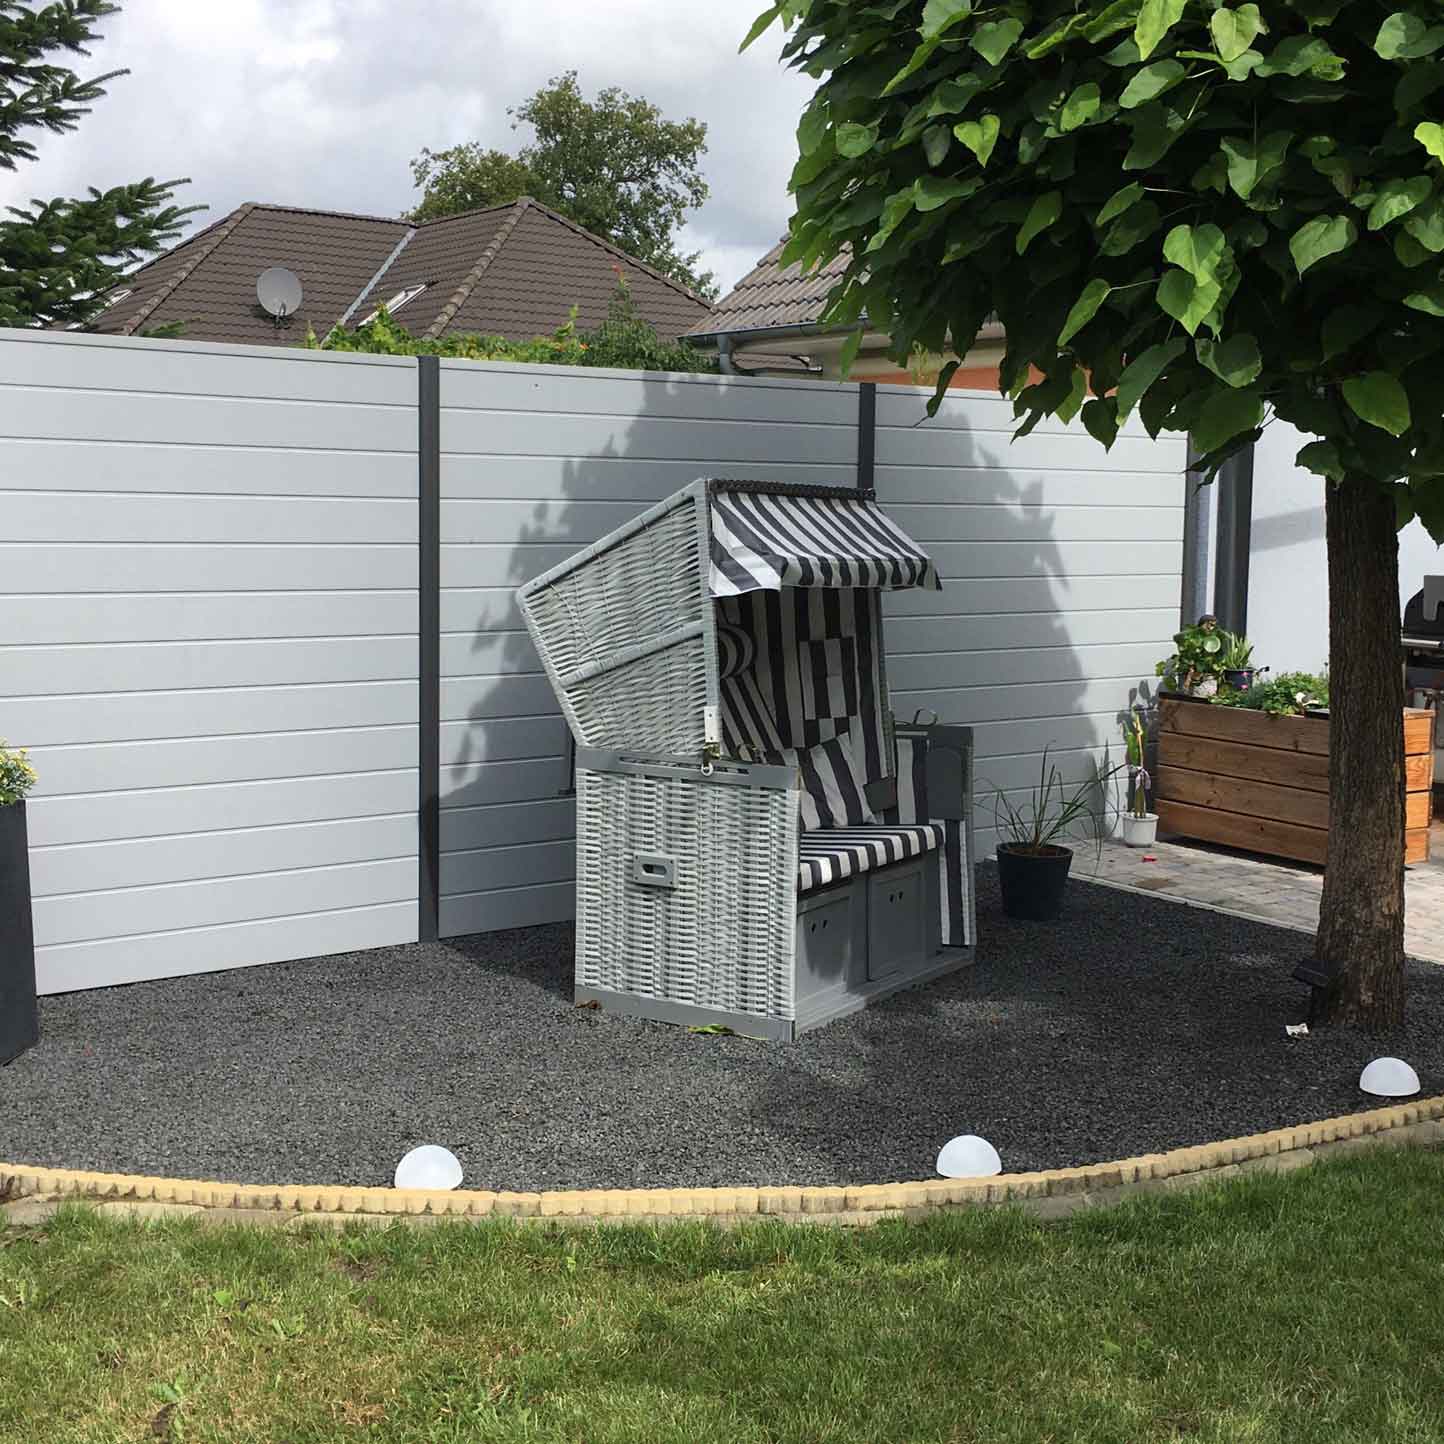 Sichtschutzzaun für den Garten in Grau aus Kunststoff mit Alu-Pfosten in Anthrazit